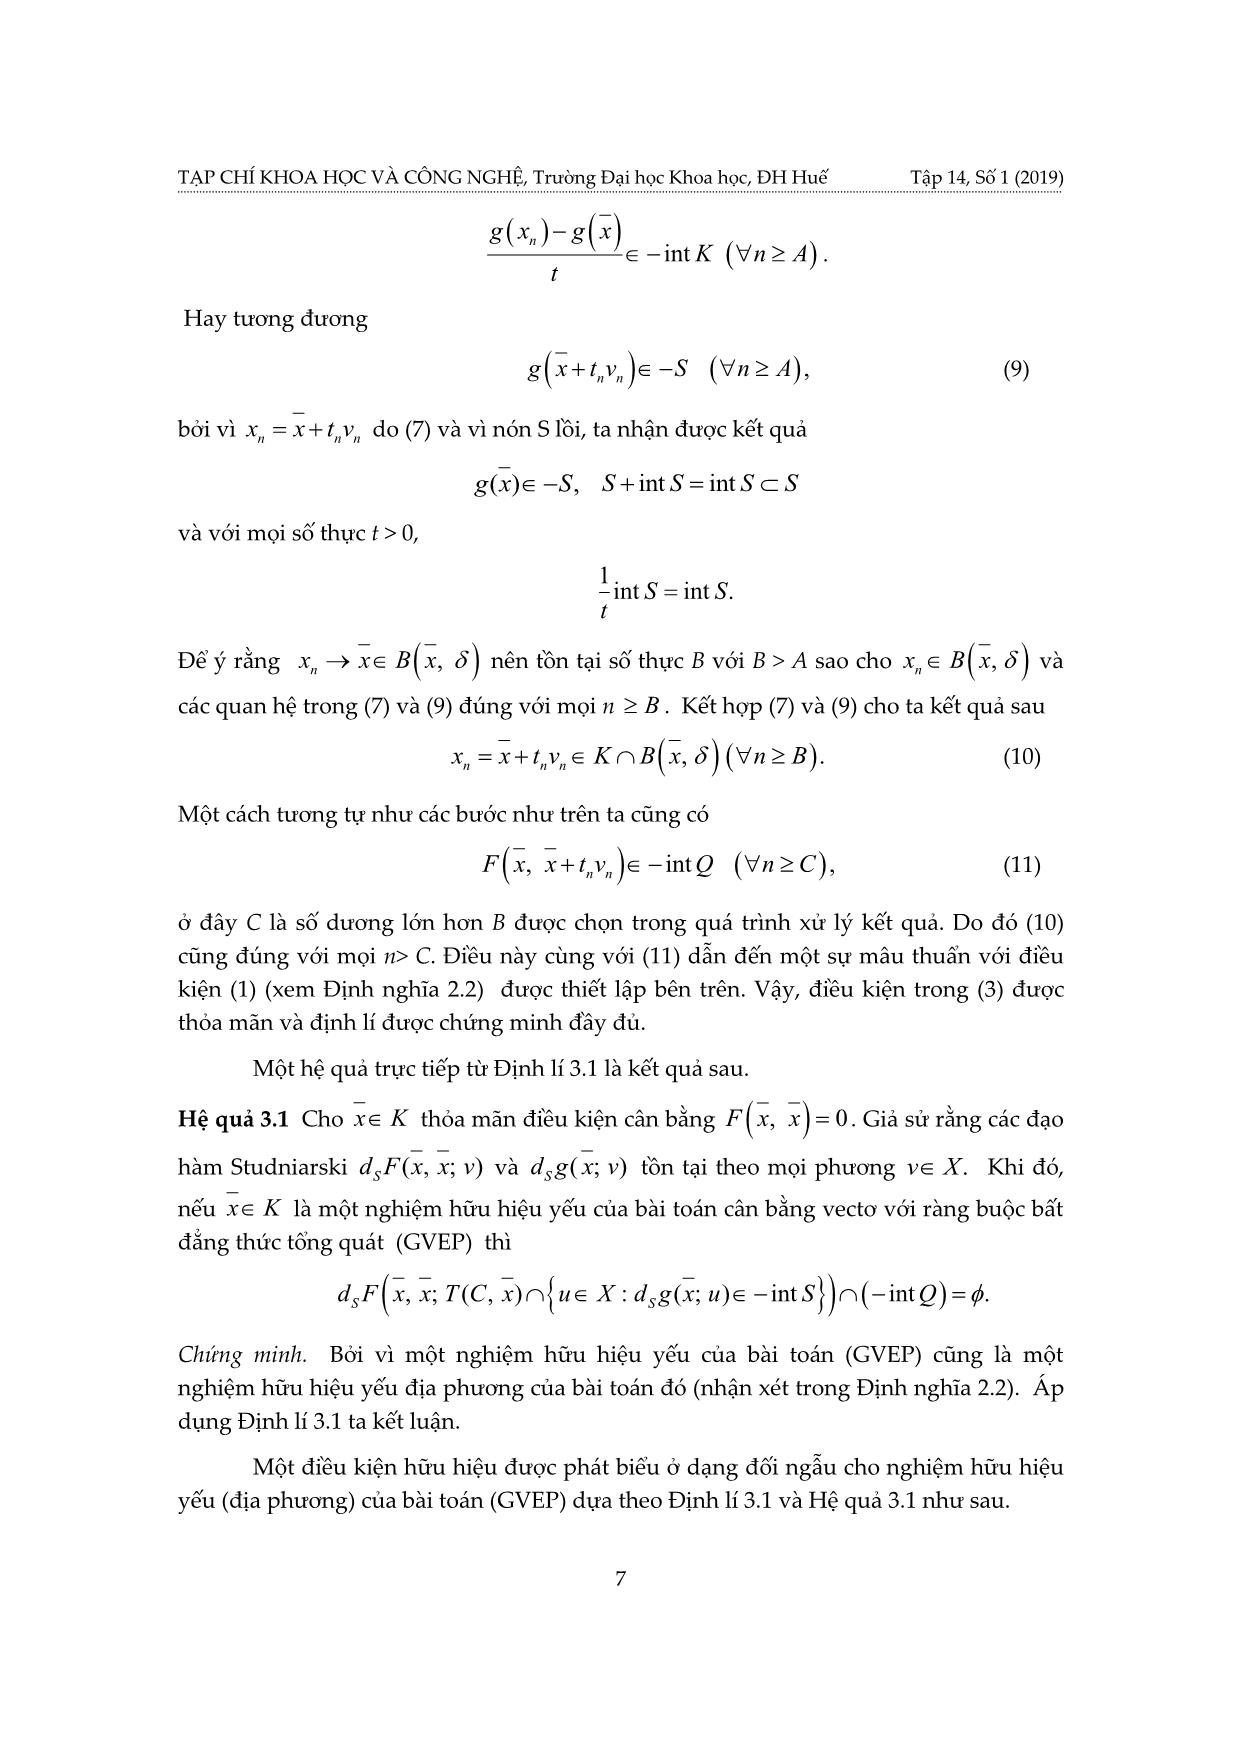 Điều kiện cần hữu hiệu cho nghiệm yếu địa phương của bài toán cân bằng vectơ có ràng buộc bất đẳng thức tổng quát và áp dụng trang 7